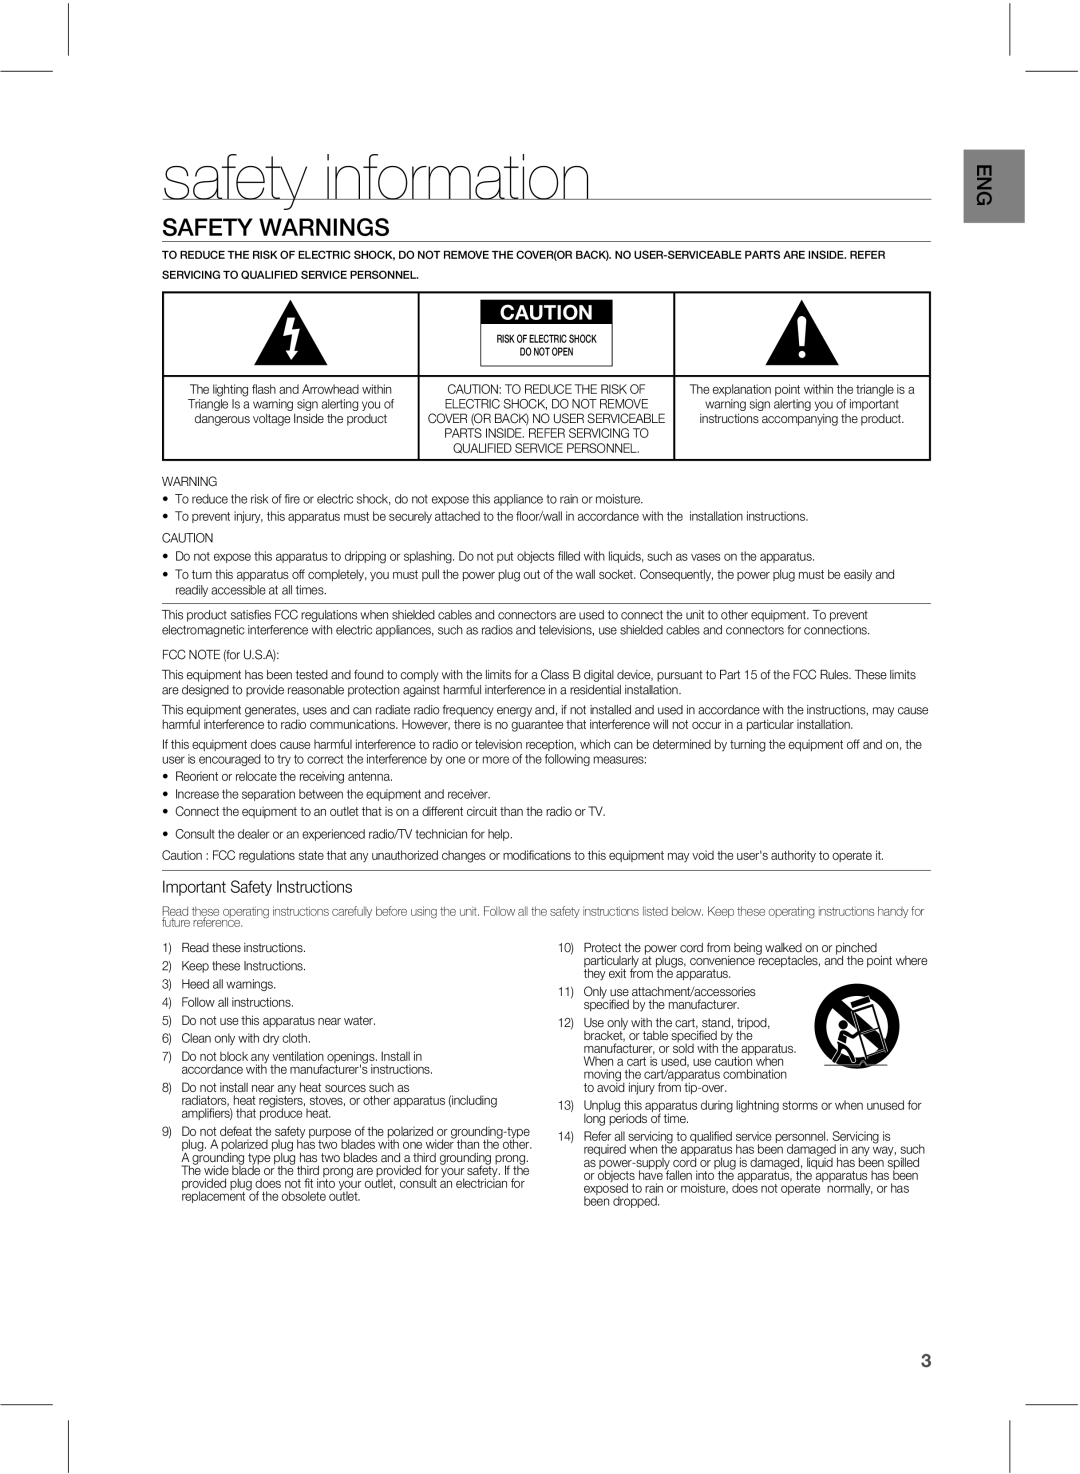 Samsung HWE550 manual safety information, 4&5 83/*/4 